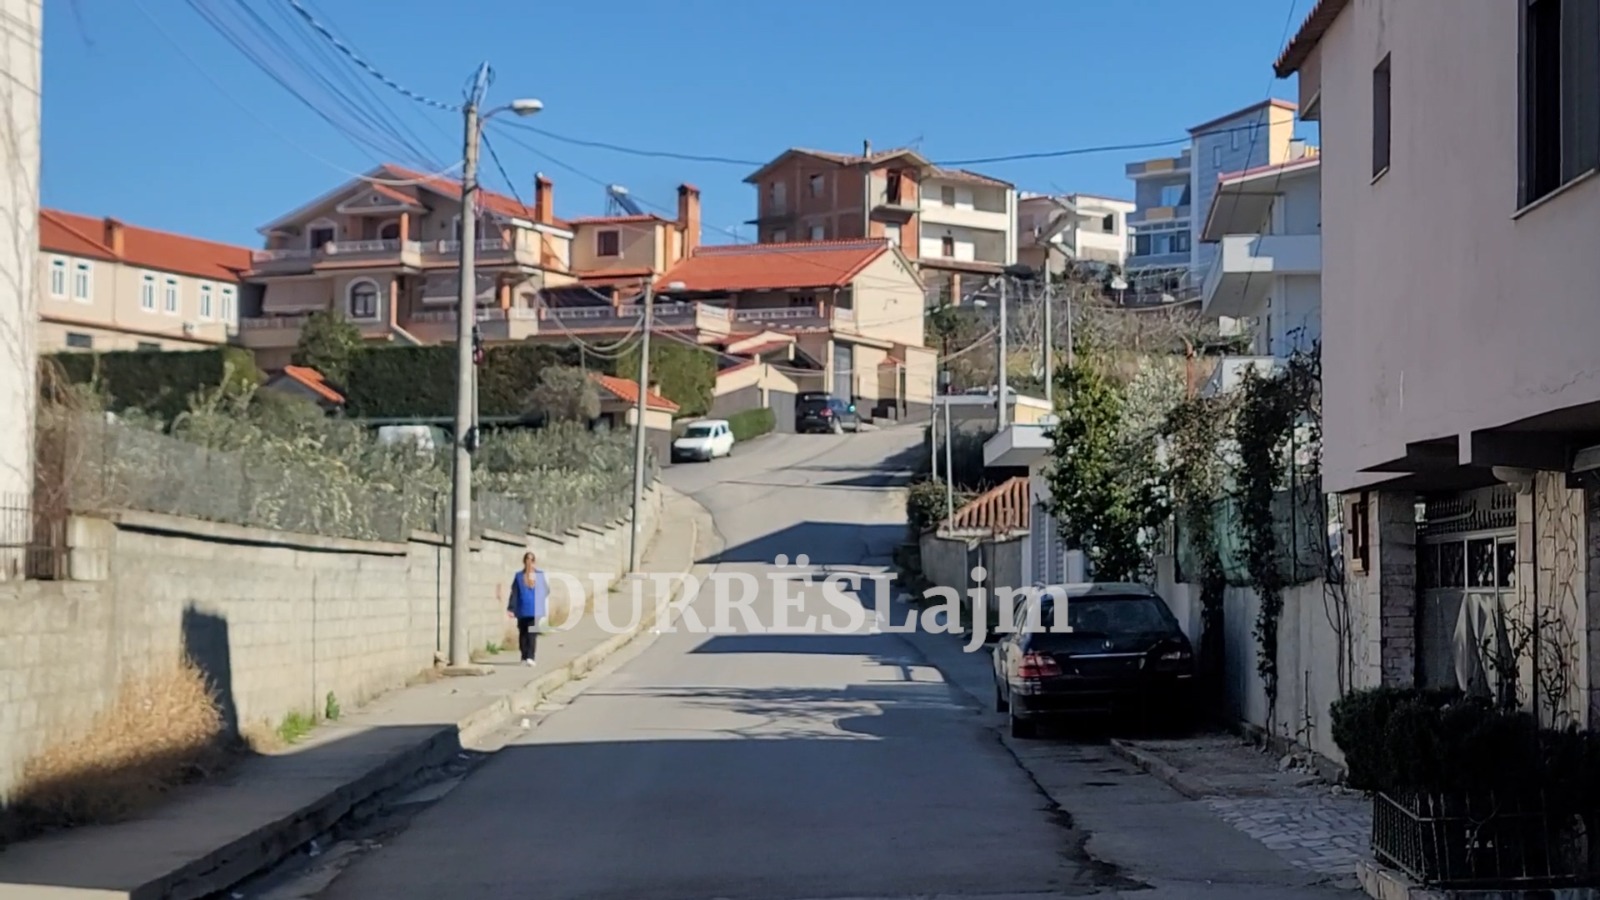 Braktisja e fshatit në Durrës, edhe të moshuarit e mendojnë largimin (VIDEO)